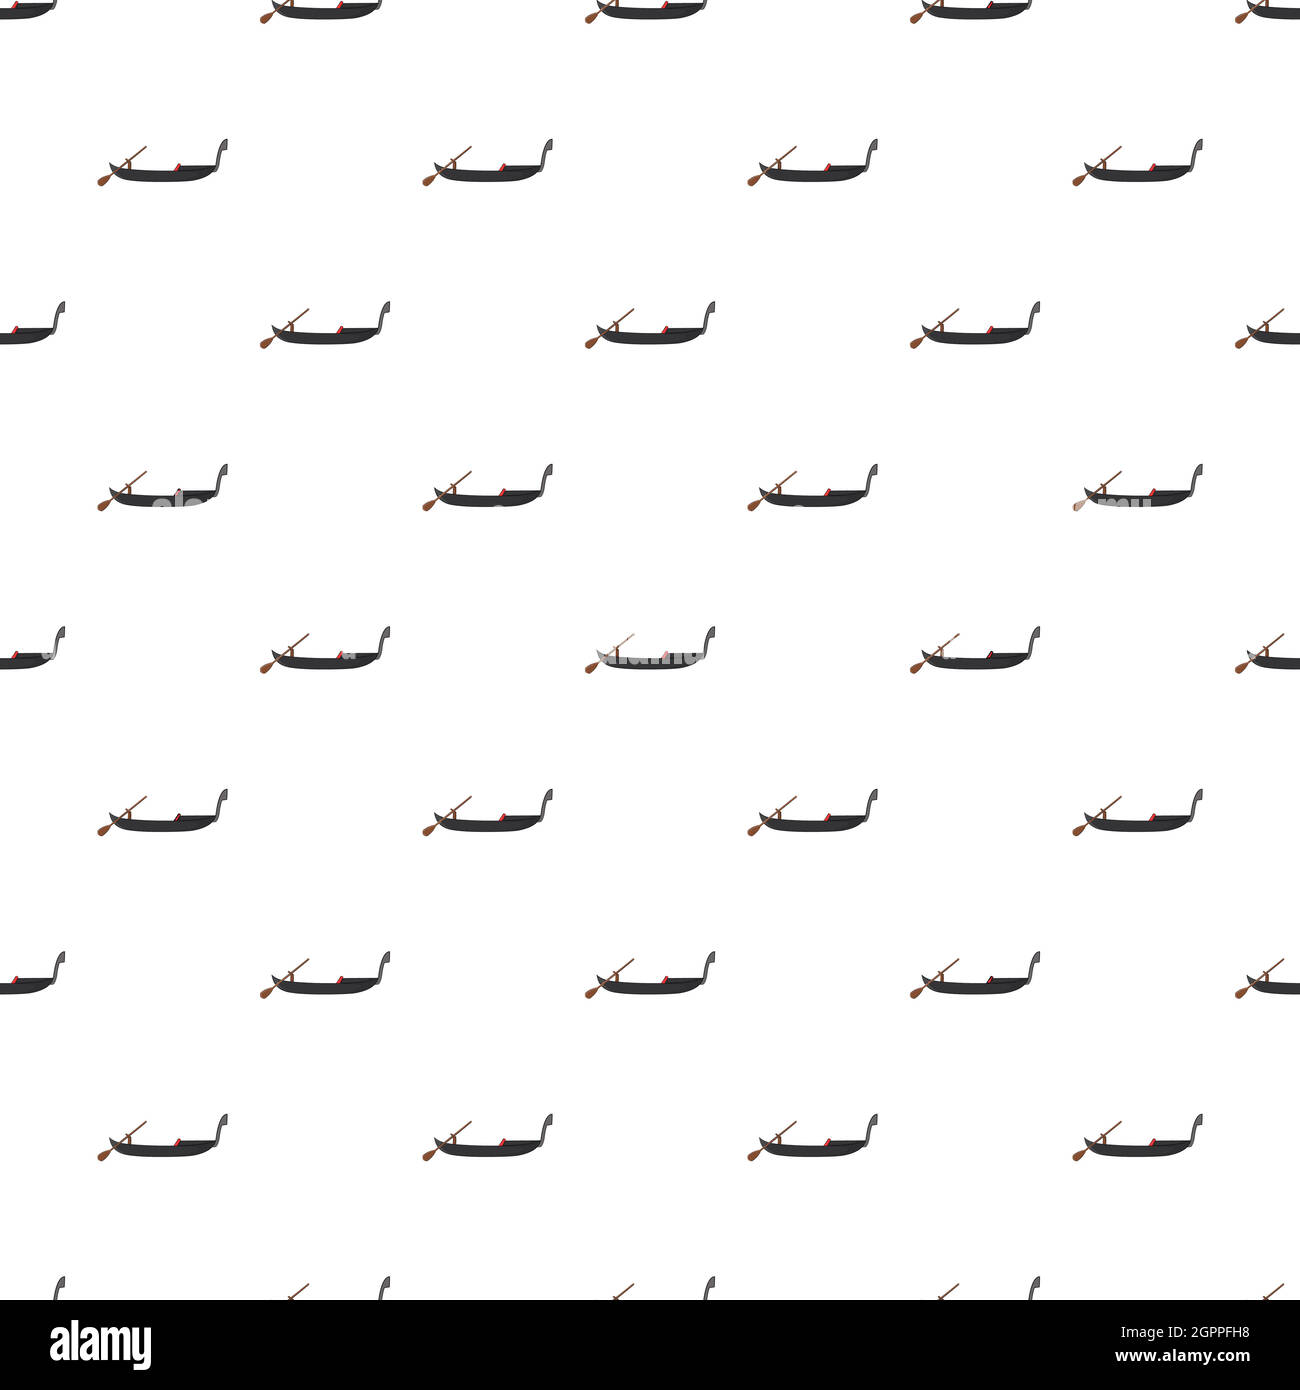 Gondola pattern, cartoon style Stock Vector